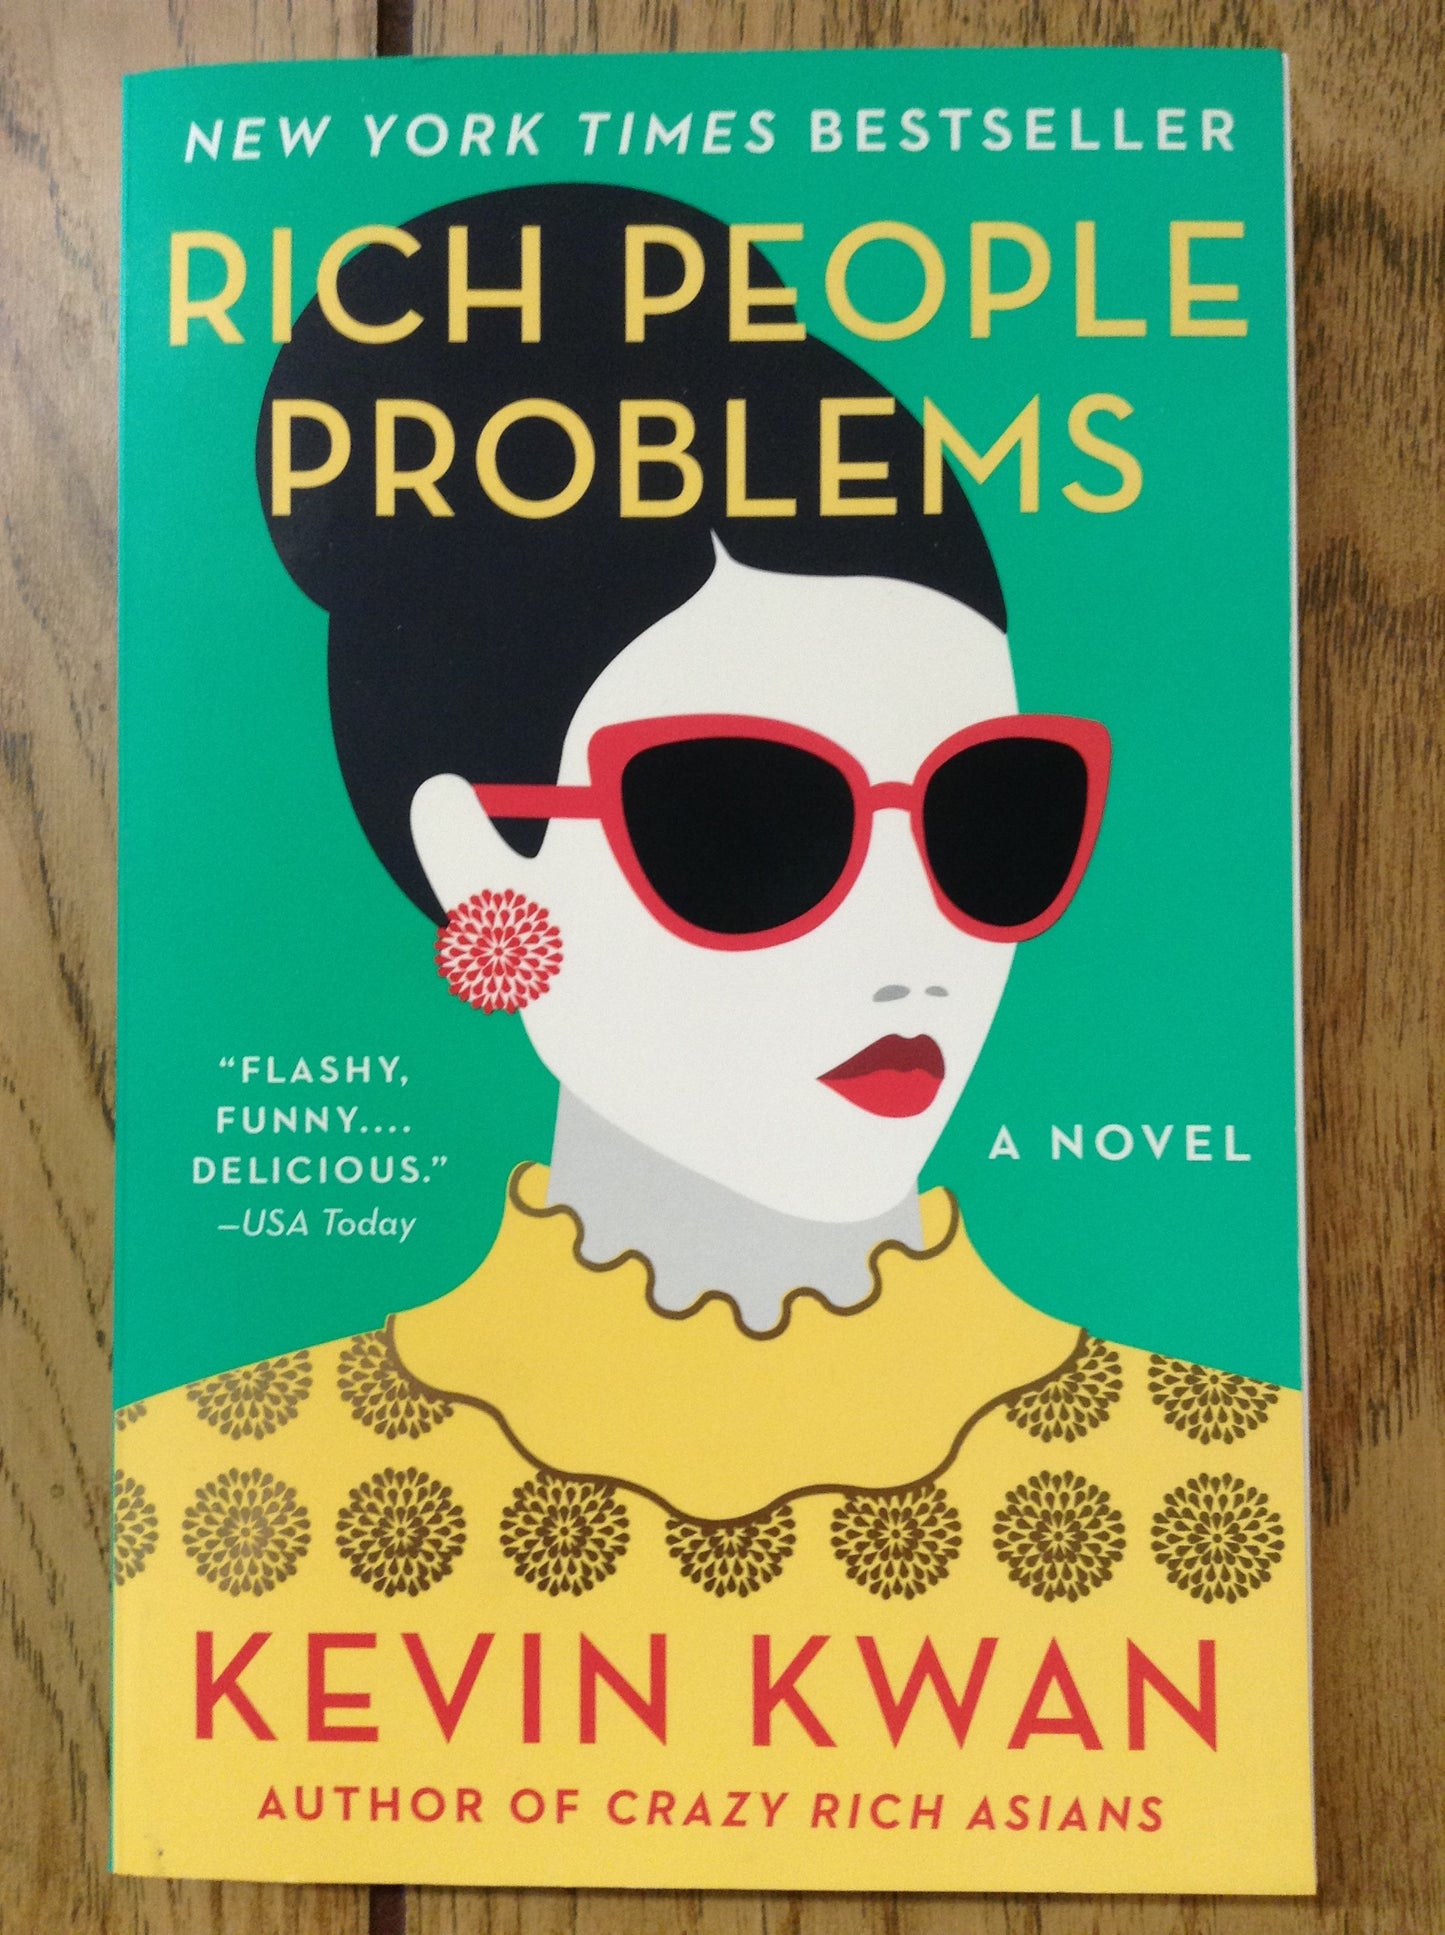 Rich People Problems (Crazy Rich Asians #3)